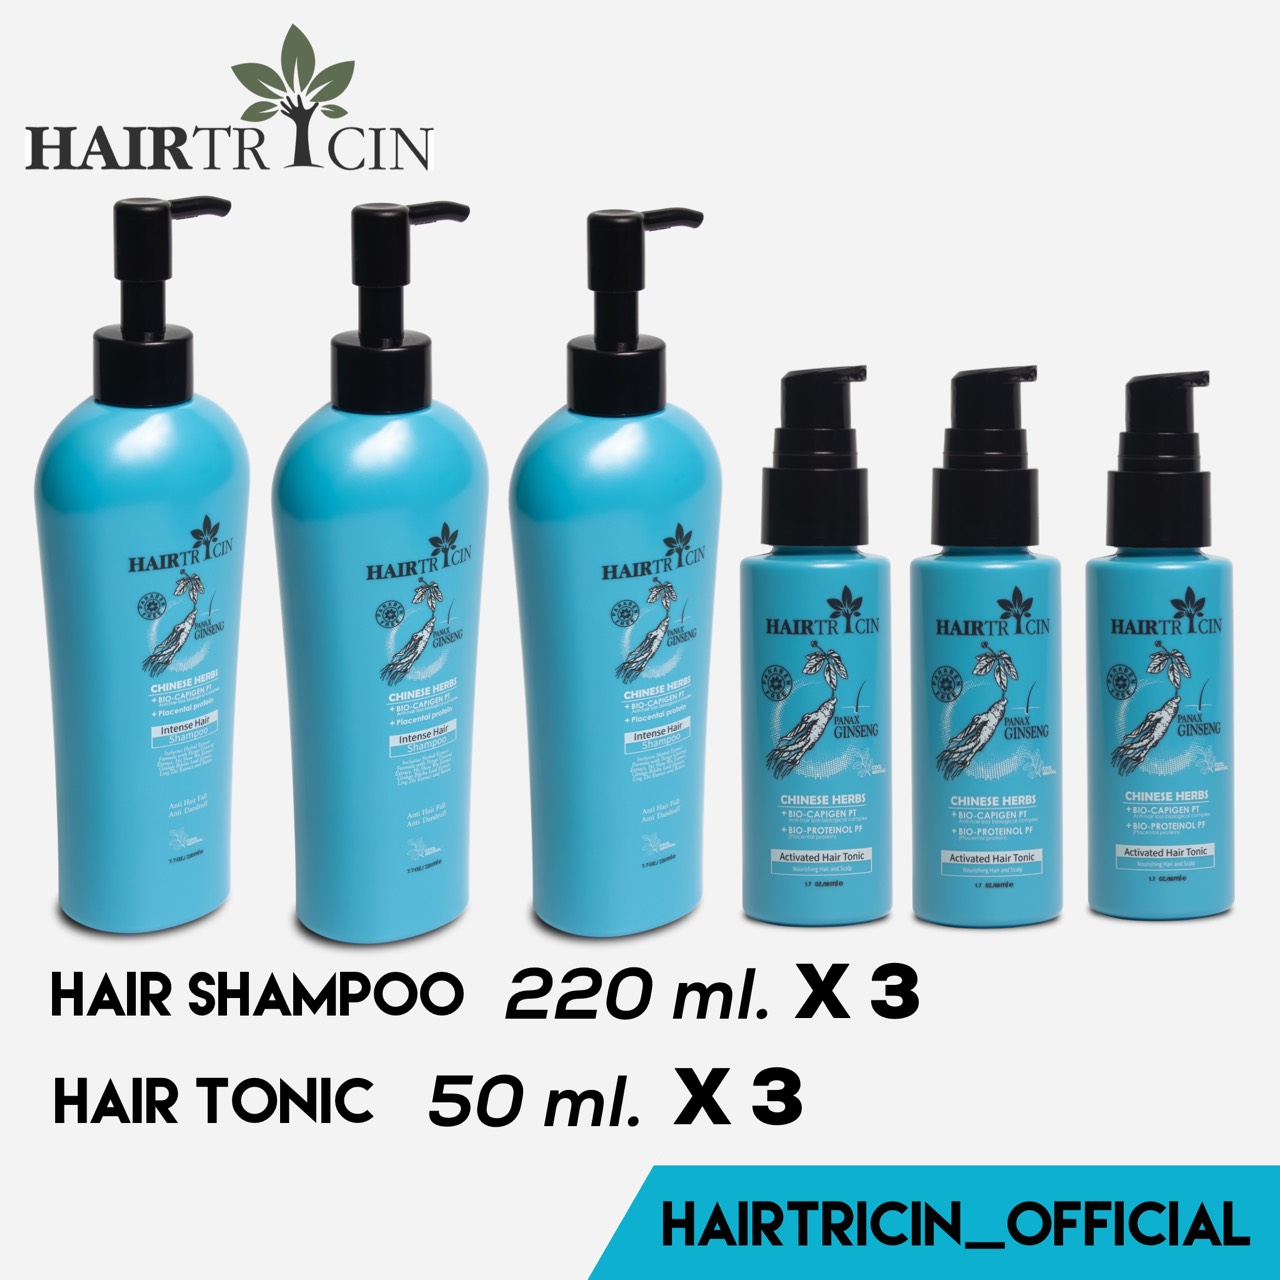 ราคา Hairtricin Hair Complete แชมพู 220 มล. 3 ขวด + เซรั่มบำรุงเส้นผม 50 มล. 3 ขวด